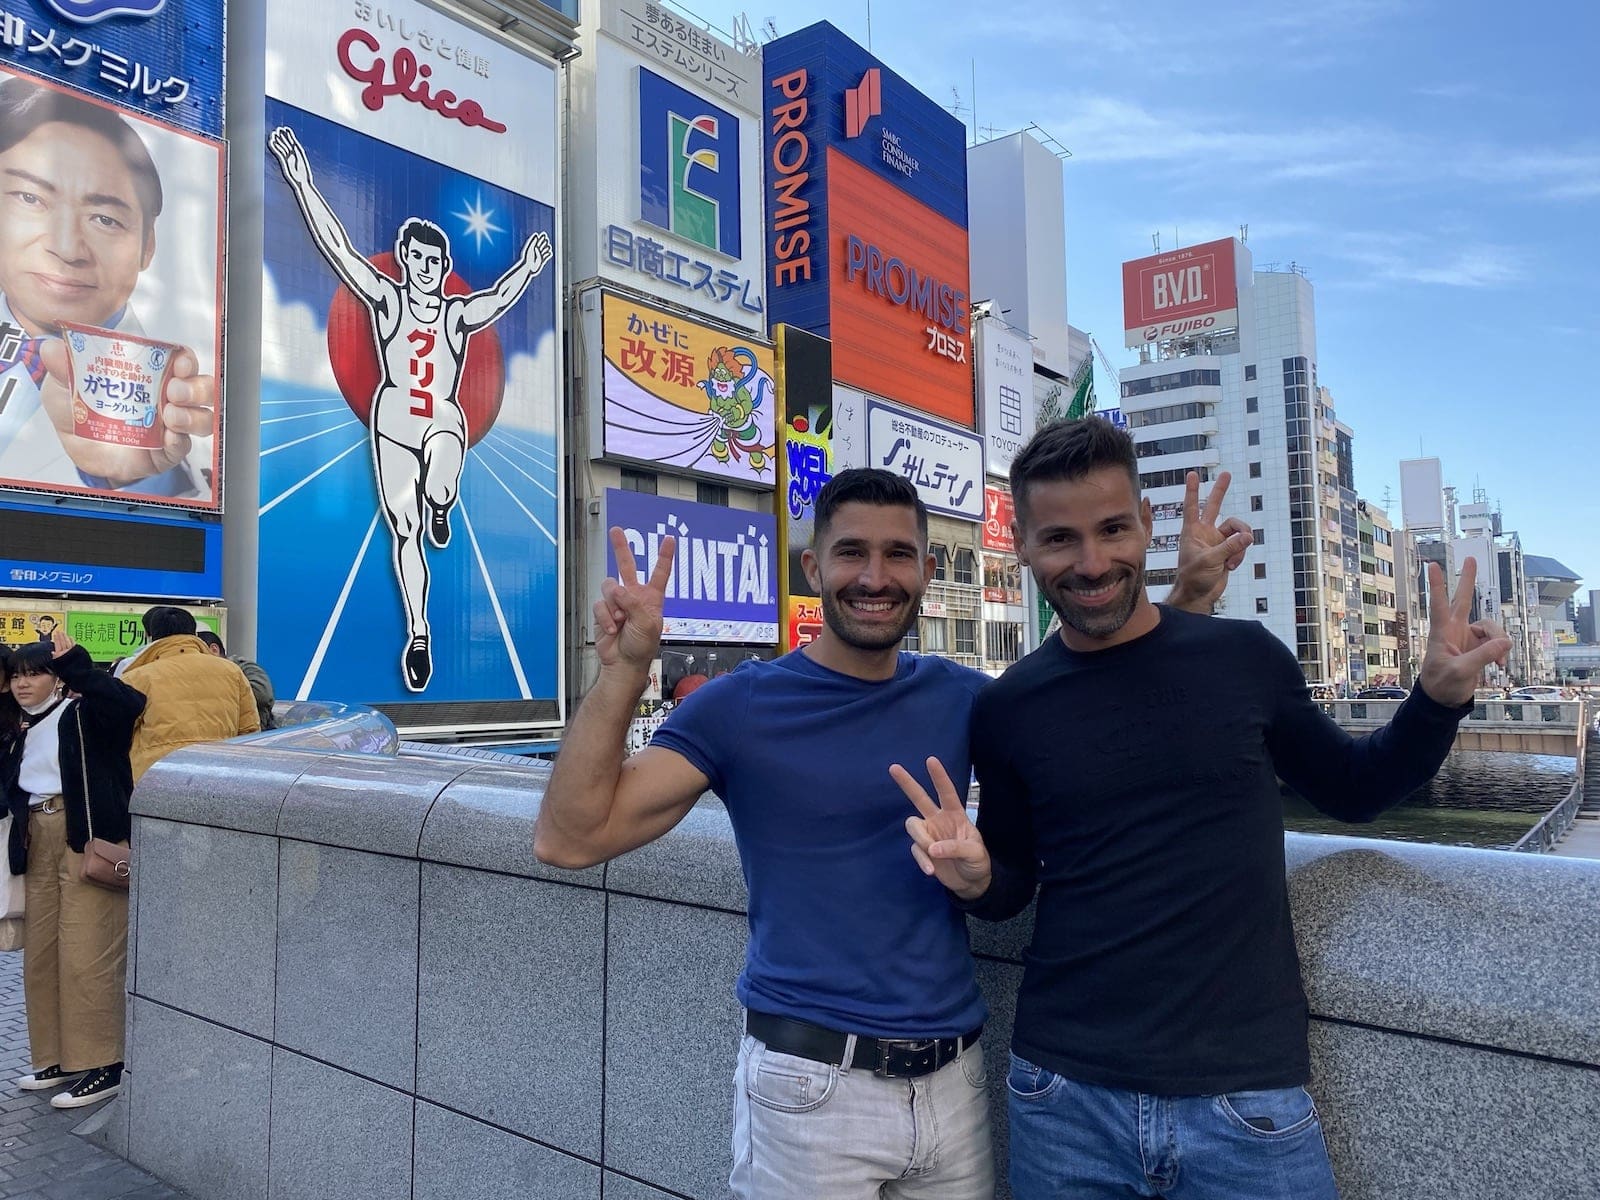 Sex man gay in a Tokyo with Gay Porn